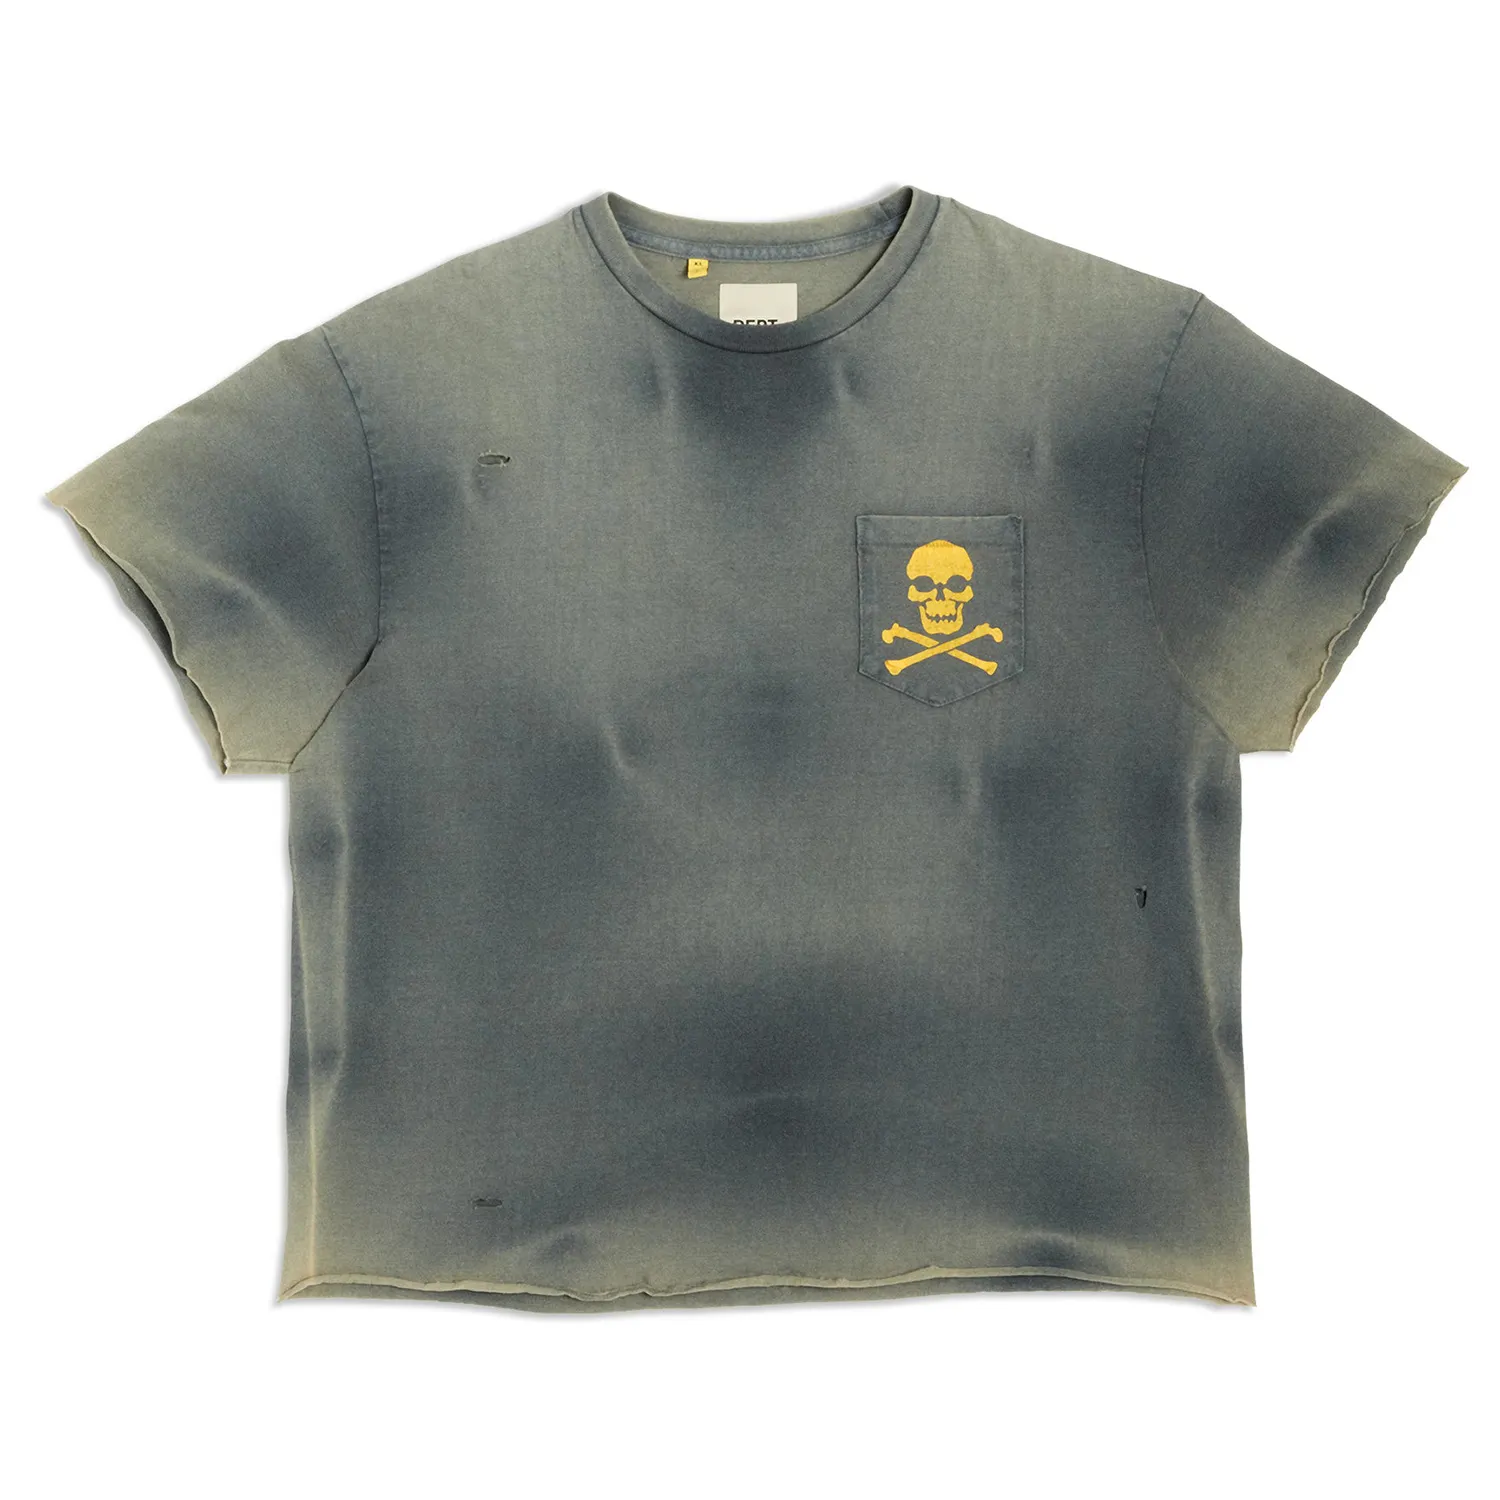 En gros en vrac sérigraphie bord coupé pierre acide lavé t-shirt personnalisé boxy recadrée 100% coton soleil délavé en détresse t-shirt